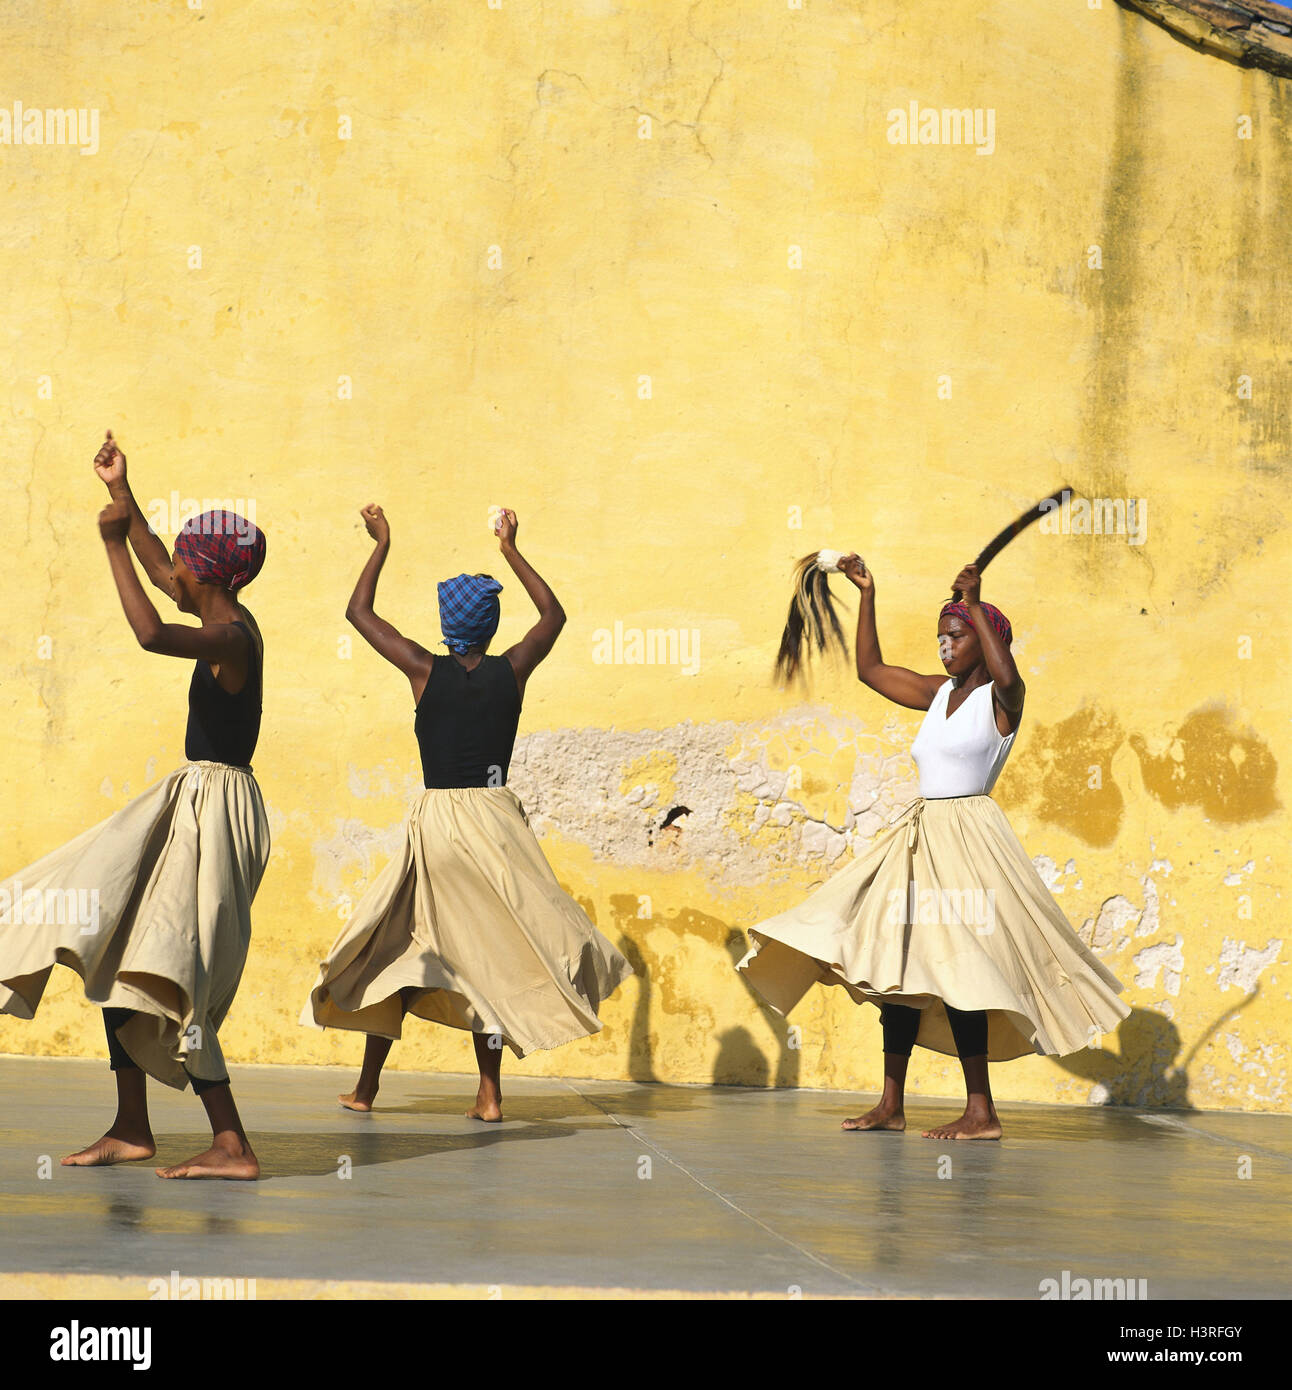 Cuba, Trinité, groupe de folklore, danseurs, PAS DE REJET DU MODÈLE des Caraïbes, personne, femmes, trois, du rendement, de la culture, tradition, folklore, danse, spectacle, danse, mur, muraille, jaune Banque D'Images